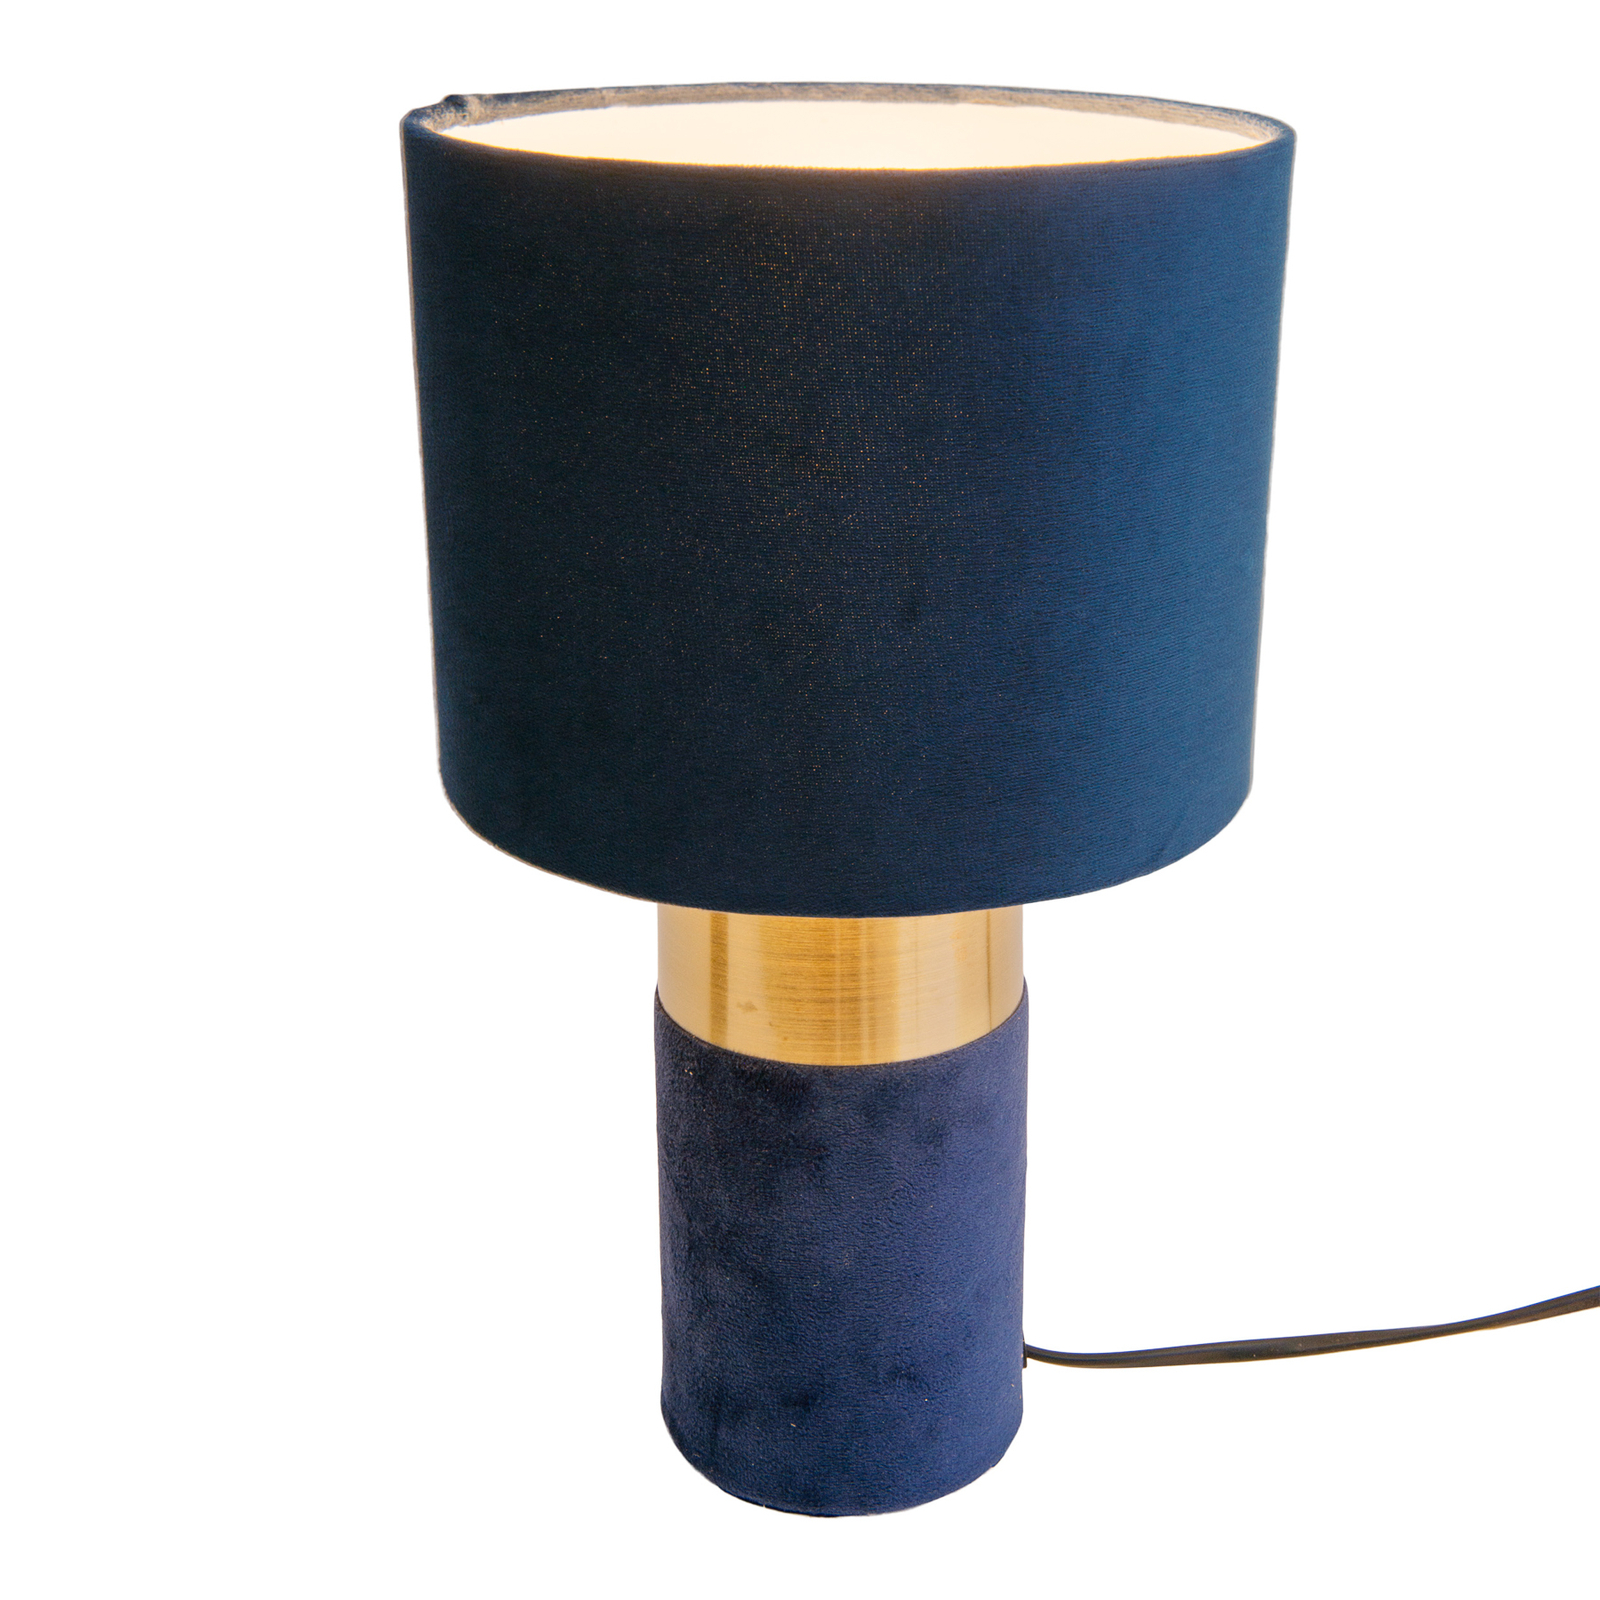 Lampa stołowa 3189512, klosz tekstylny, niebieski